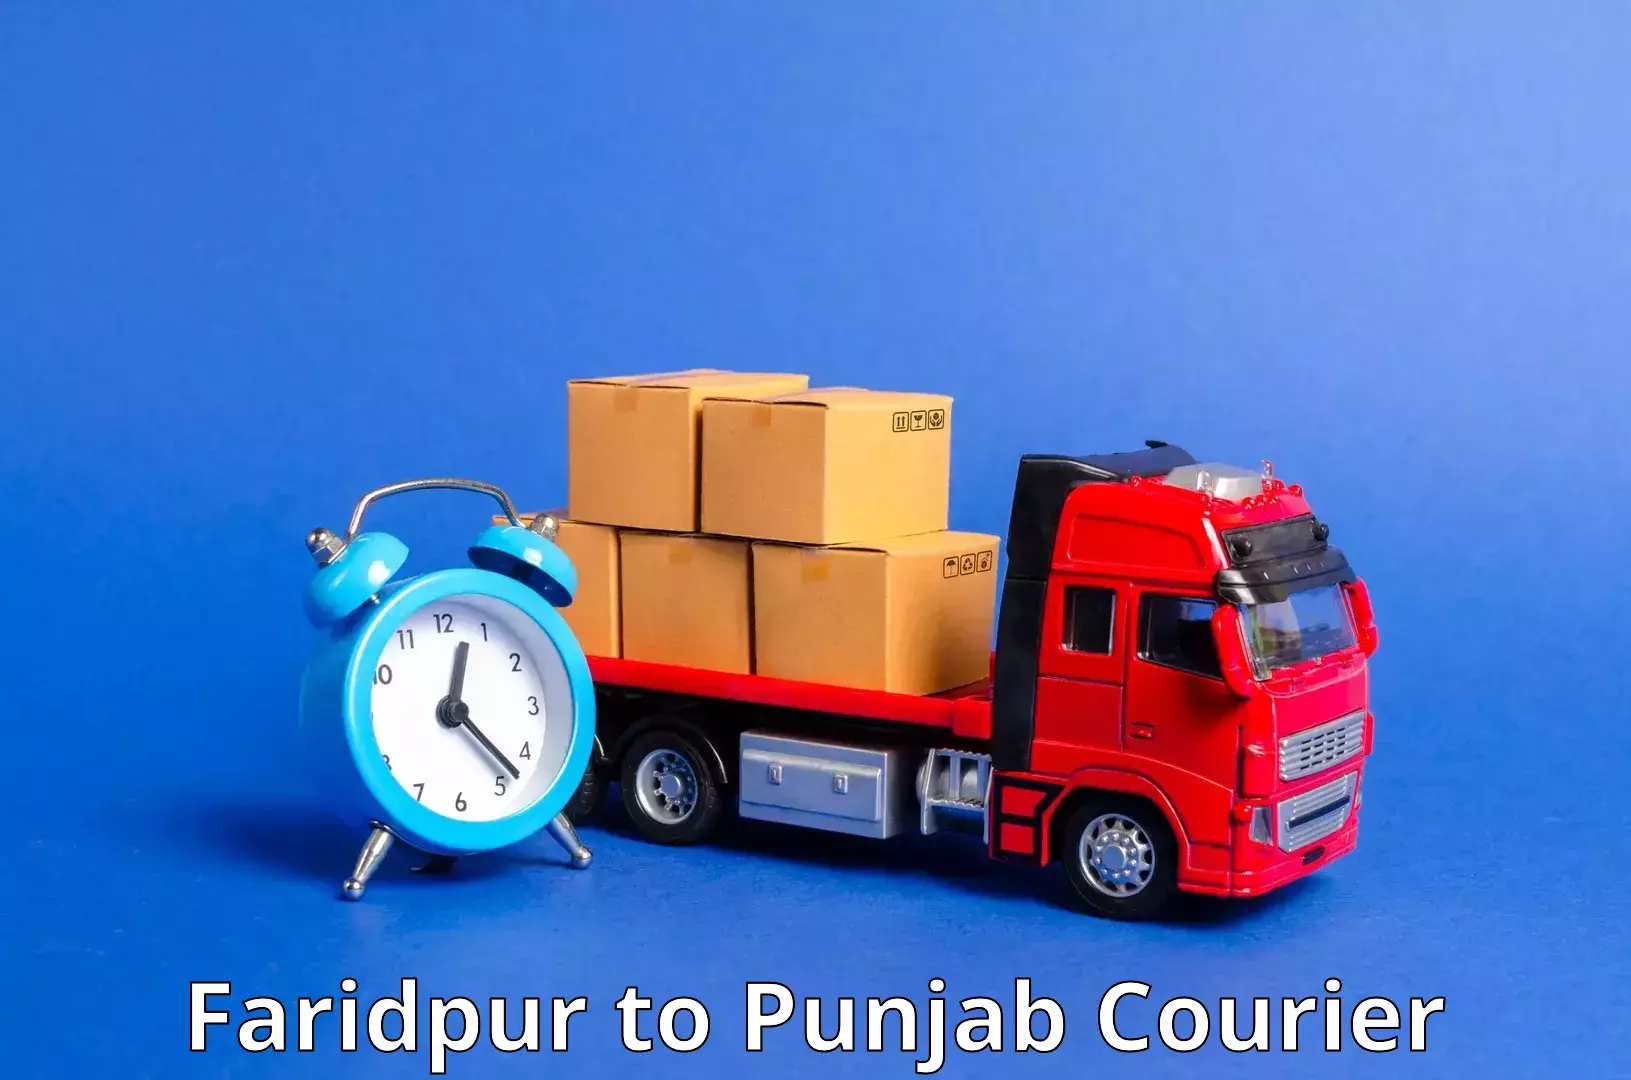 Courier service comparison Faridpur to Samana